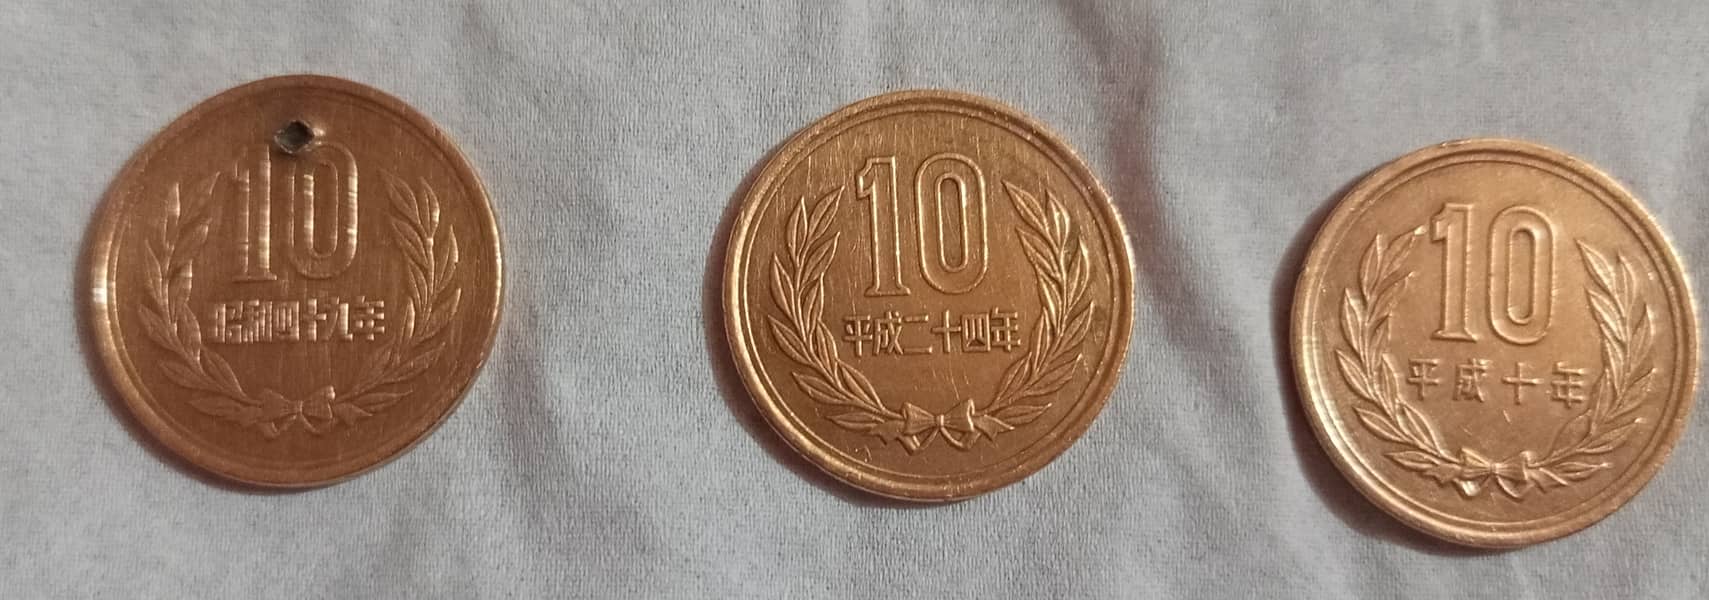 OLD JAPAN COINS: 10 Yen Bronze,50 Yen FLORAL, 100 Yen Beautiful Flower 5